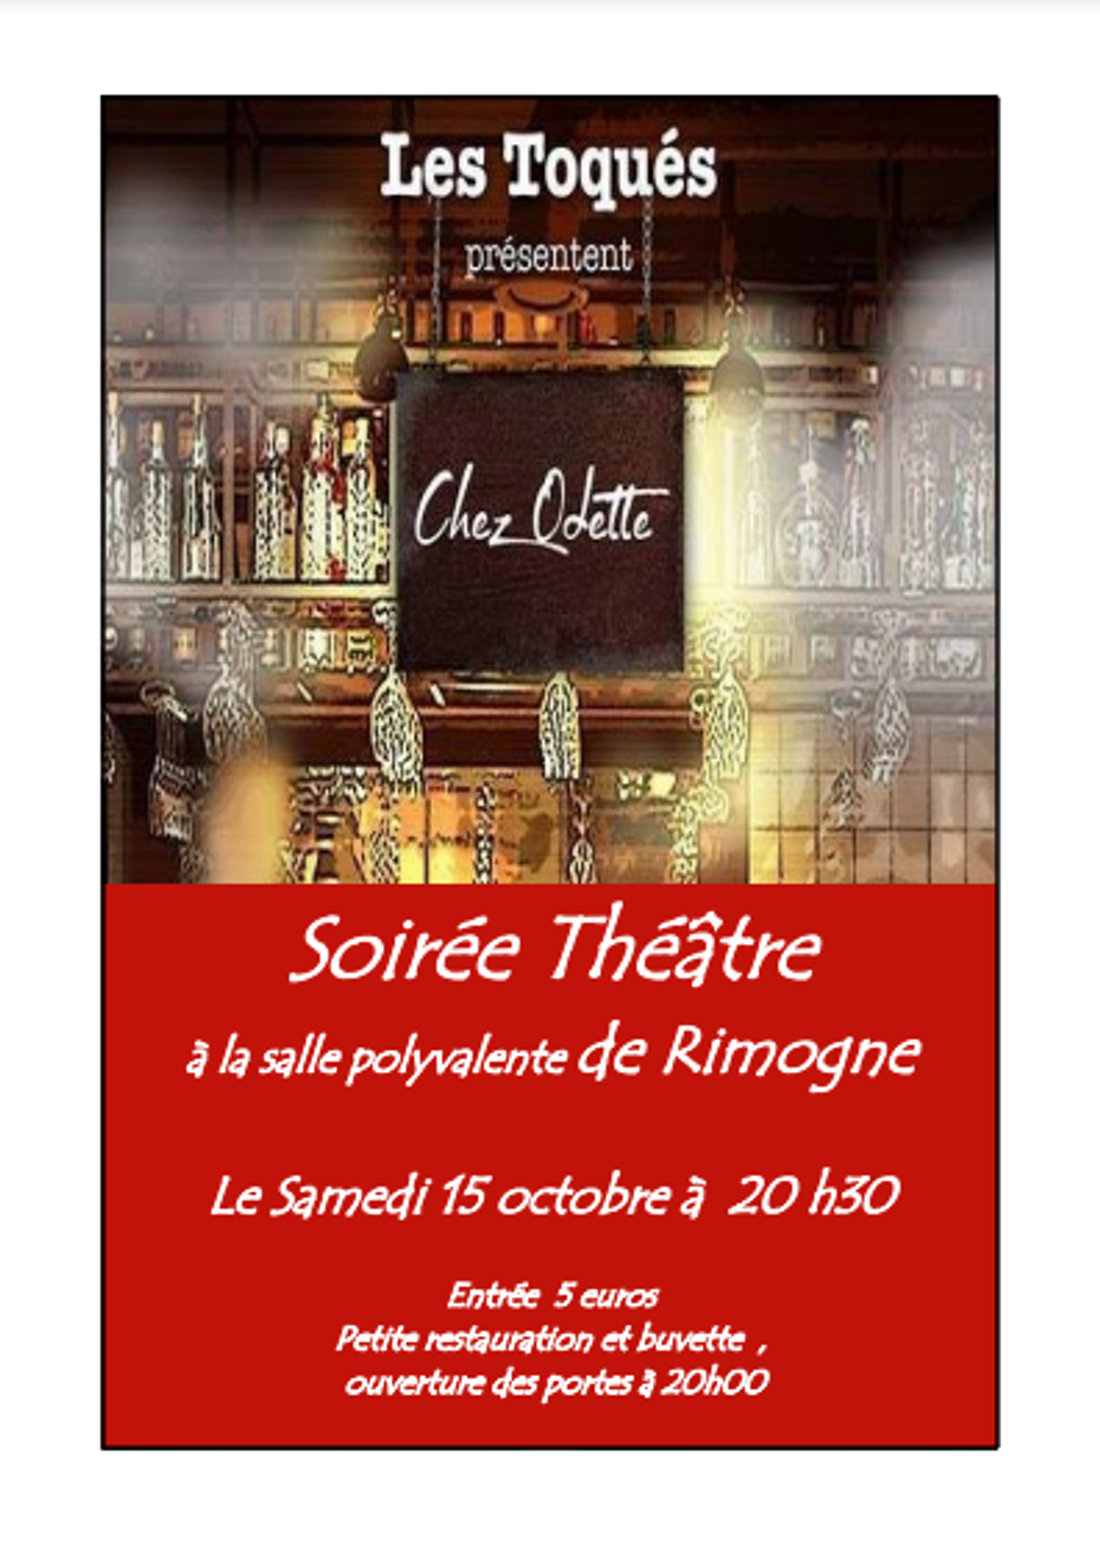 Théâtre - La troupe "Les Toqués"